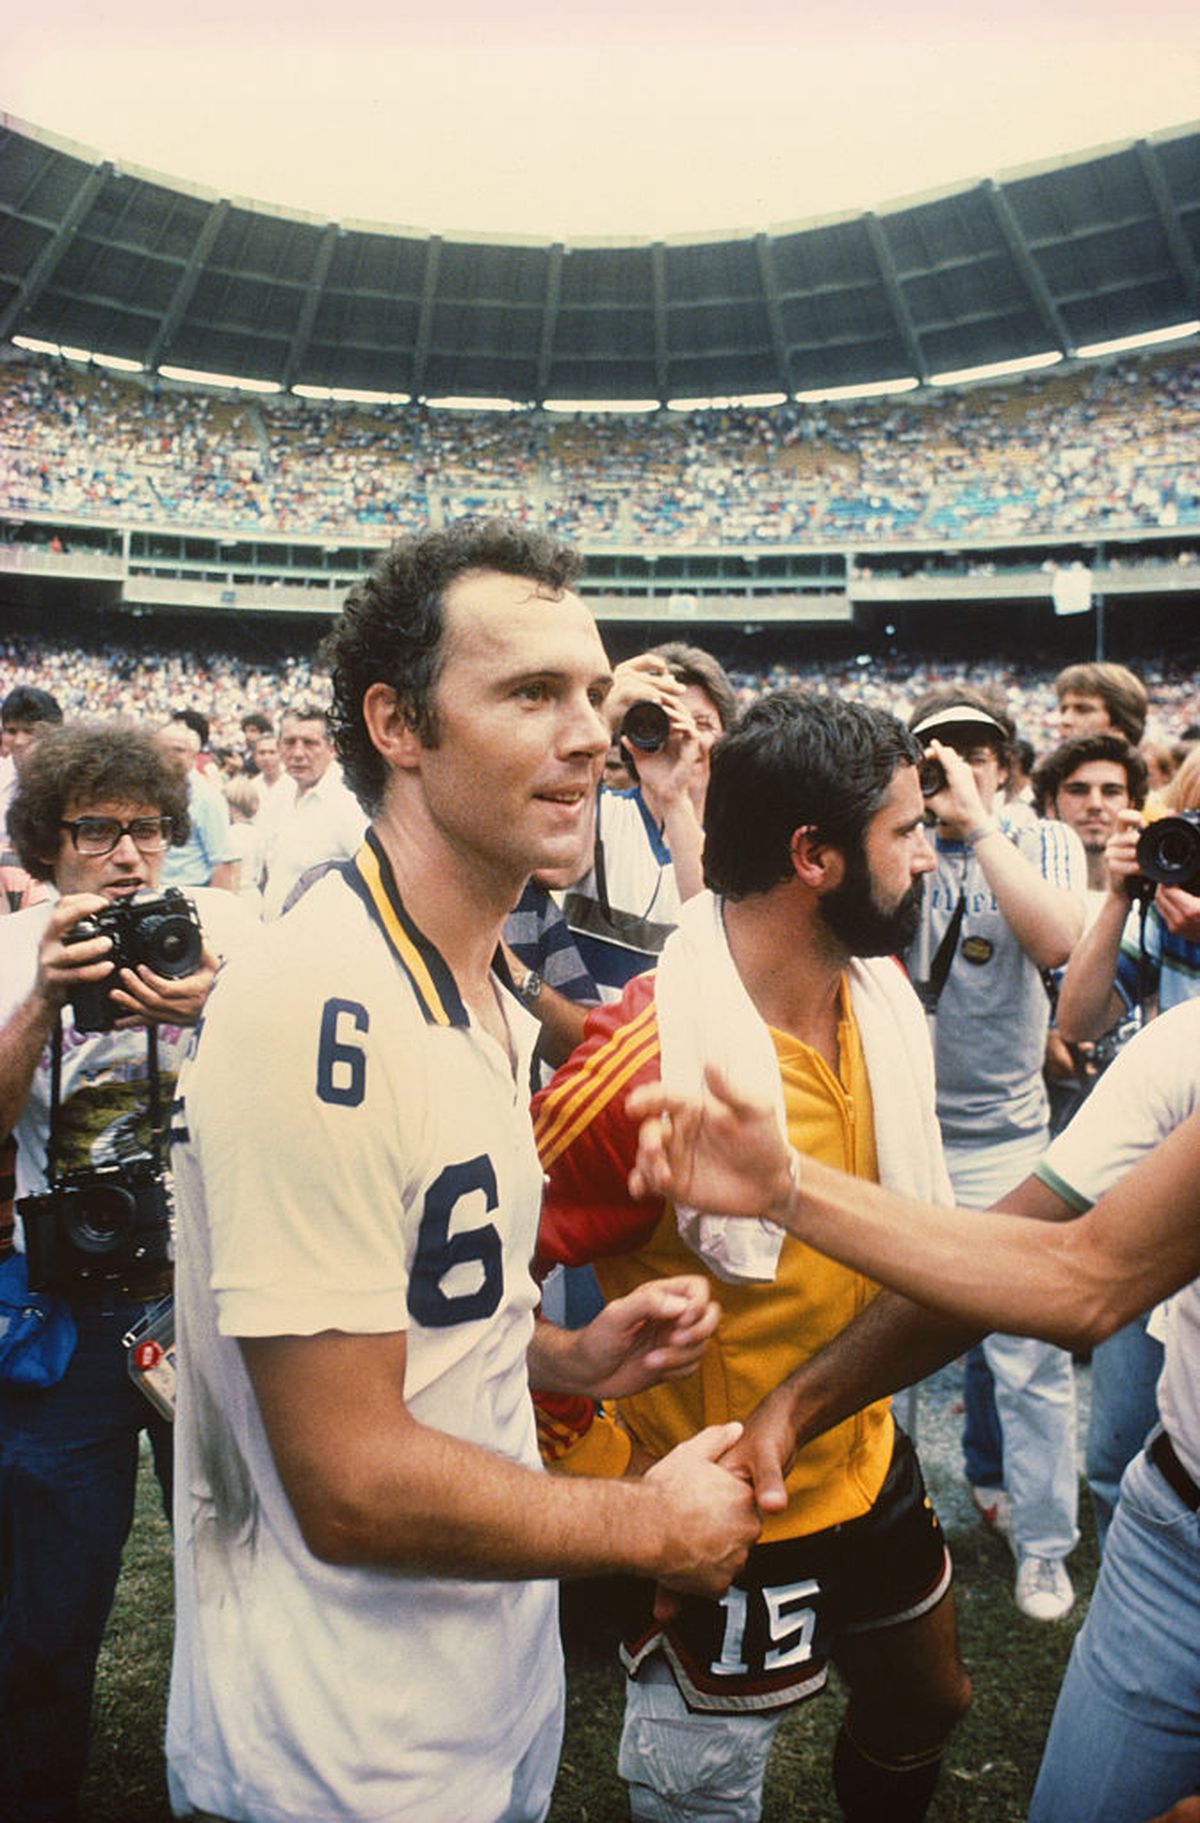 Franz Beckenbauer a încetat din viață la vârsta de 78 de ani: „A murit în somn, înconjurat de familia sa”